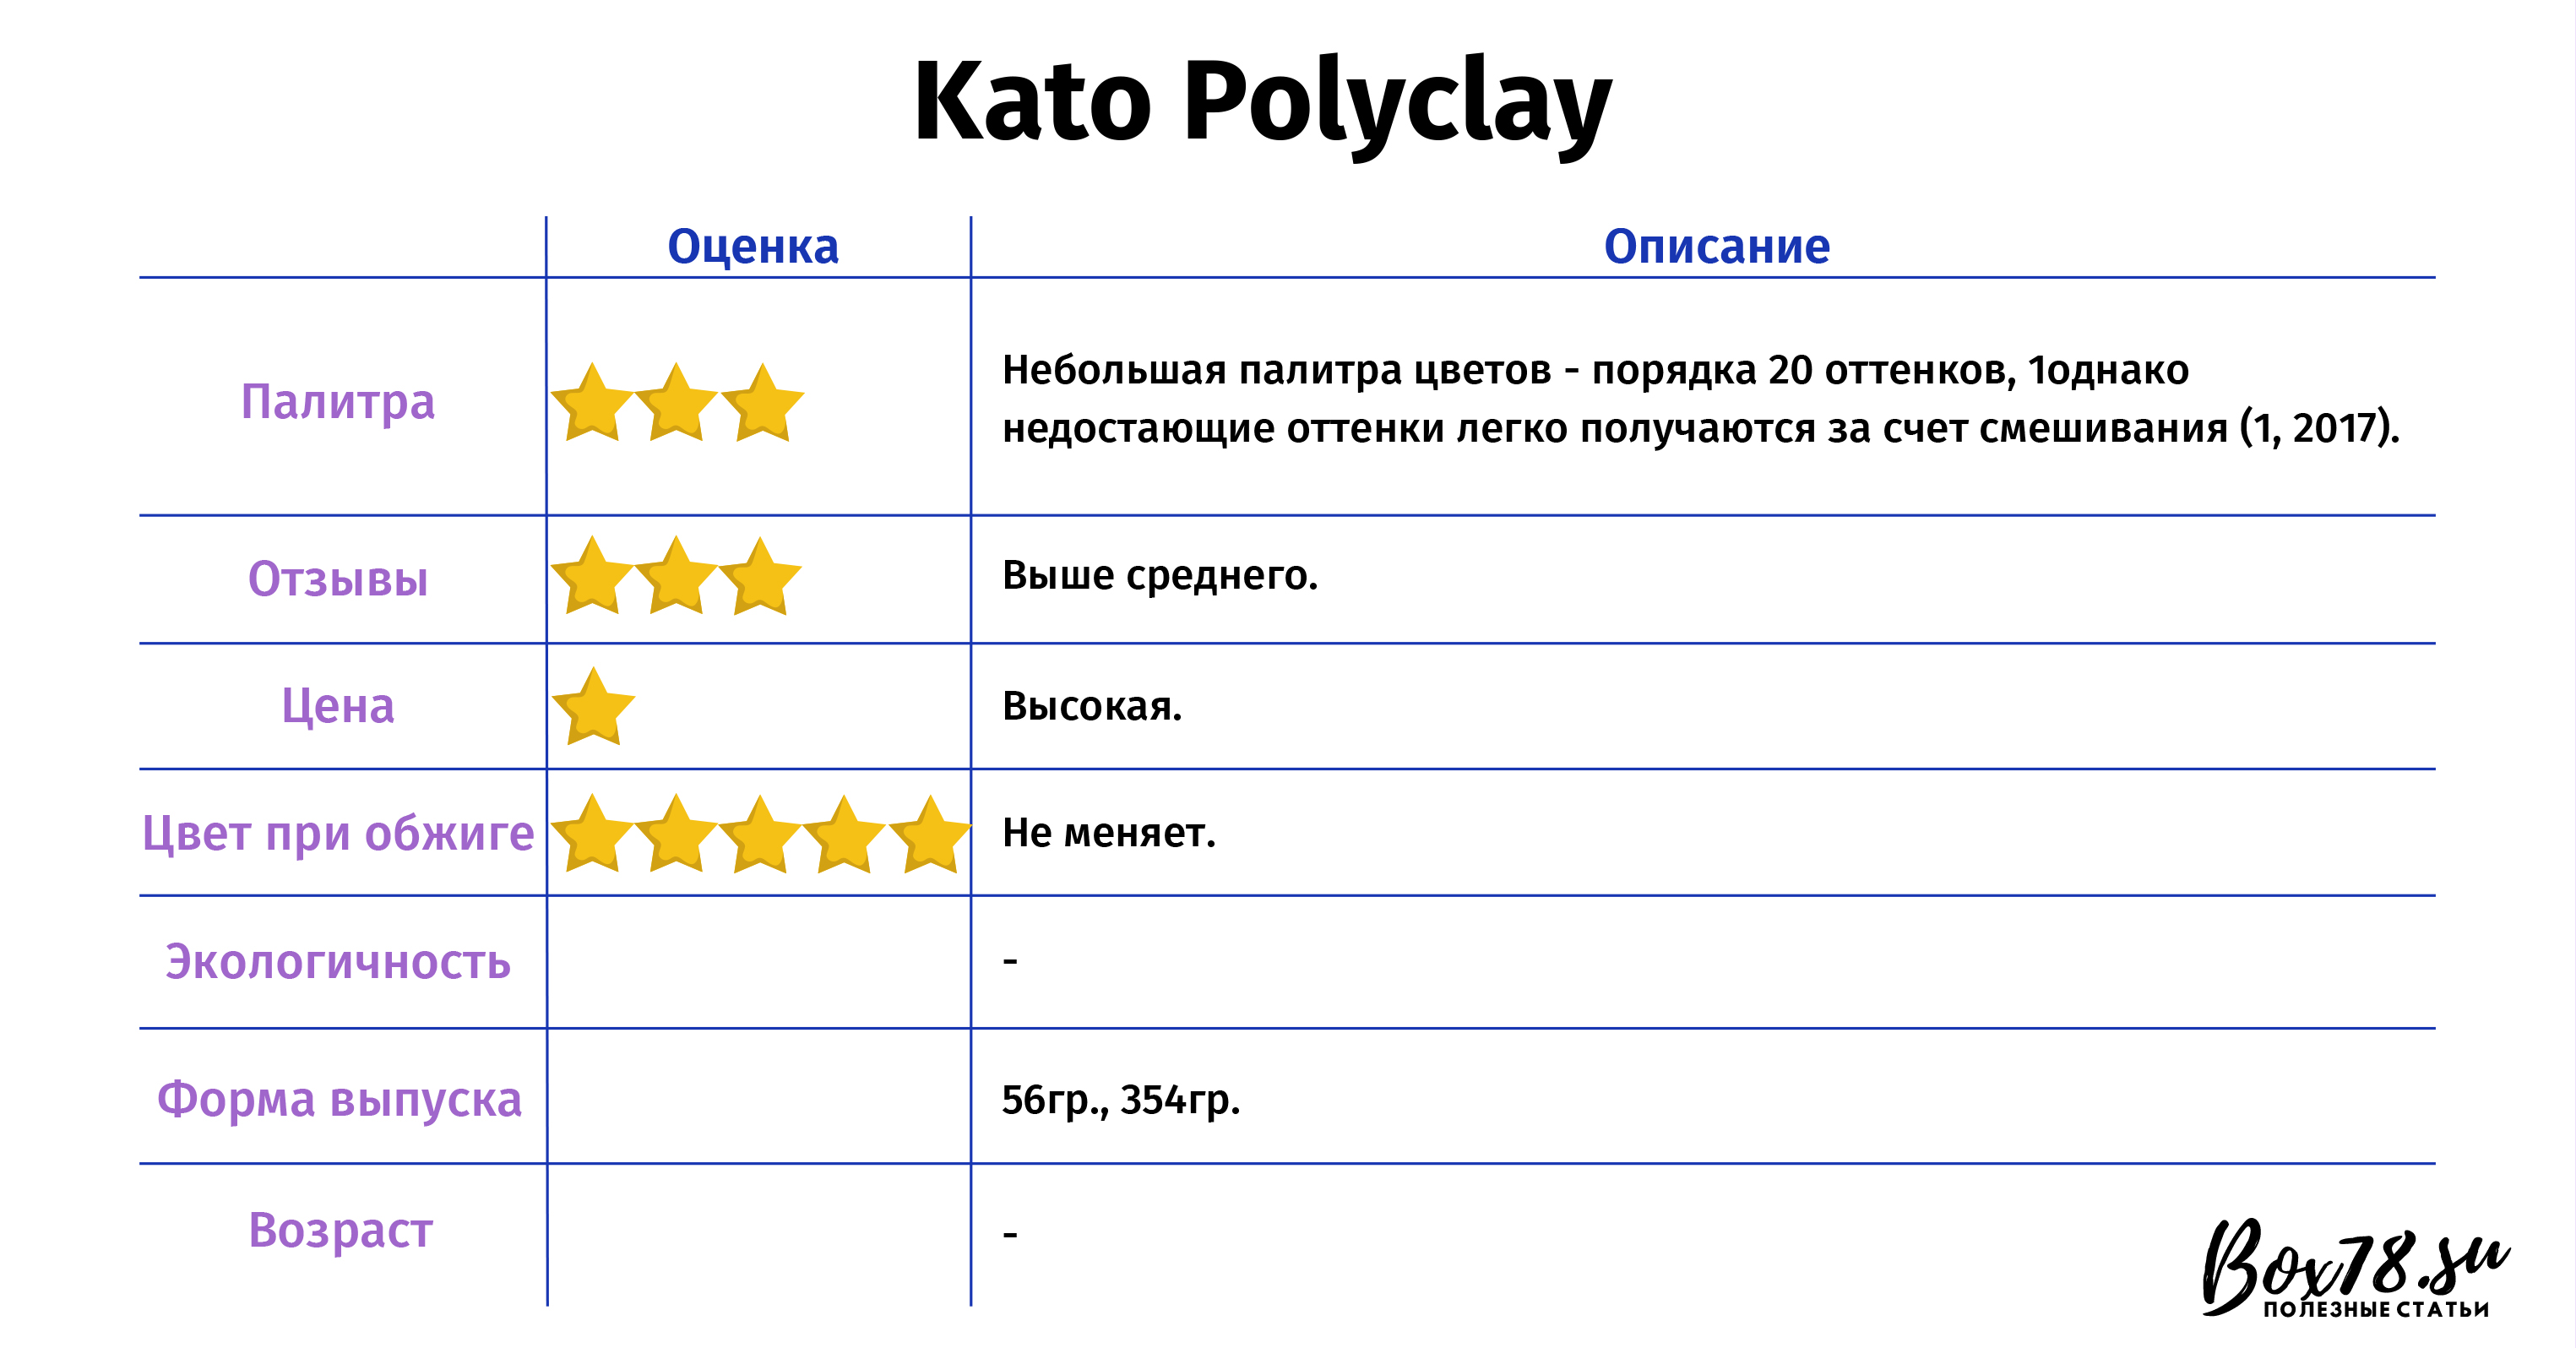 Kato Polyclay.jpg